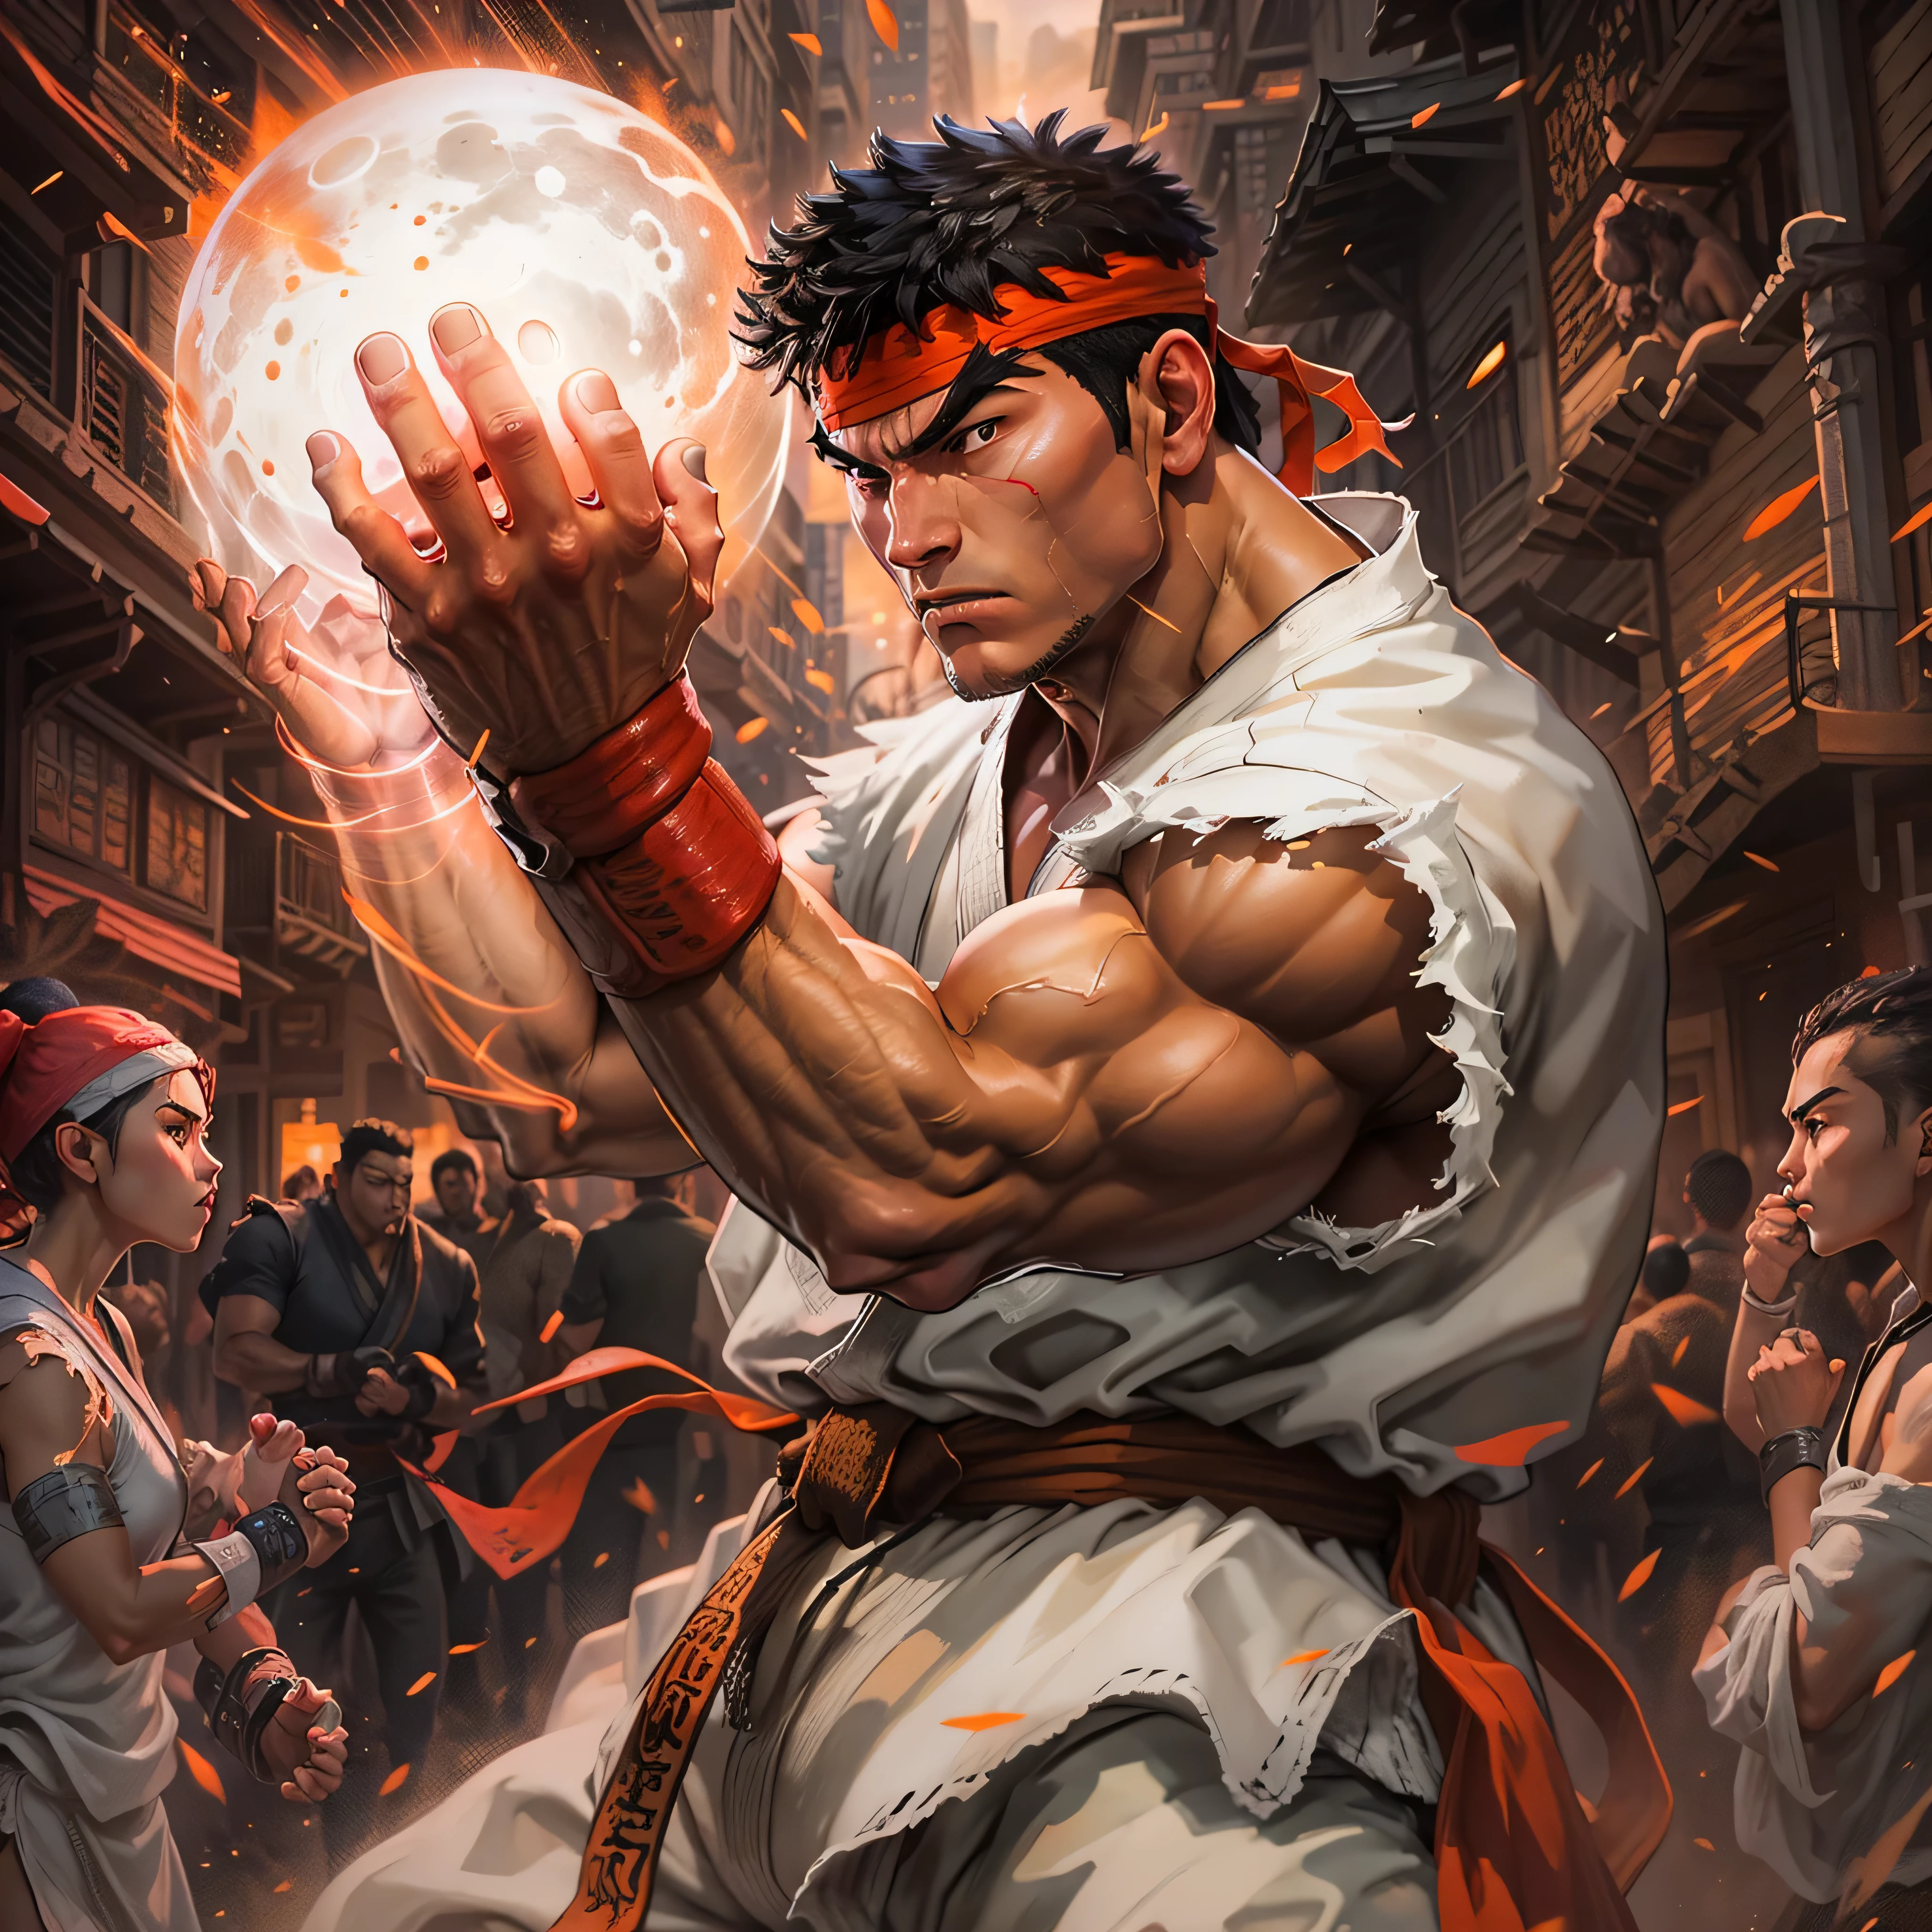 ภาพฟิล์มนัวร์ของ Ryu จาก Street Fighter 2: นักรบแห่งโลก, สวมชุดคาราเต้ Gi แขนกุดสีขาวอันเป็นเอกลักษณ์ของเขา และที่คาดผมสีแดง, แขนข้างหนึ่งยื่นไปข้างหน้าพร้อมกับลูกกลมพลังงานเรืองแสงวนอยู่ในฝ่ามือของเขา, เปล่งประกายเจิดจ้าตัดกับฉากหลังที่มีแสงสลัวๆ. แขนอีกข้างของเขาเกร็ง, ถอยกลับไปราวกับกำลังเตรียมการโจมตีด้วยศิลปะการต่อสู้ที่ทรงพลังที่สุด. ฝูงชนที่มาชม, การผสมผสานของผู้ยืนดูที่หวาดกลัวและศัตรูที่น่าหวาดกลัว, รวมตัวกันอยู่ในซอกซอยที่มีแสงสลัวๆ, การแสดงออกของพวกเขาช่างแตกต่างอย่างสิ้นเชิงกับจานสีอันเข้มข้นของปริศนาของริว